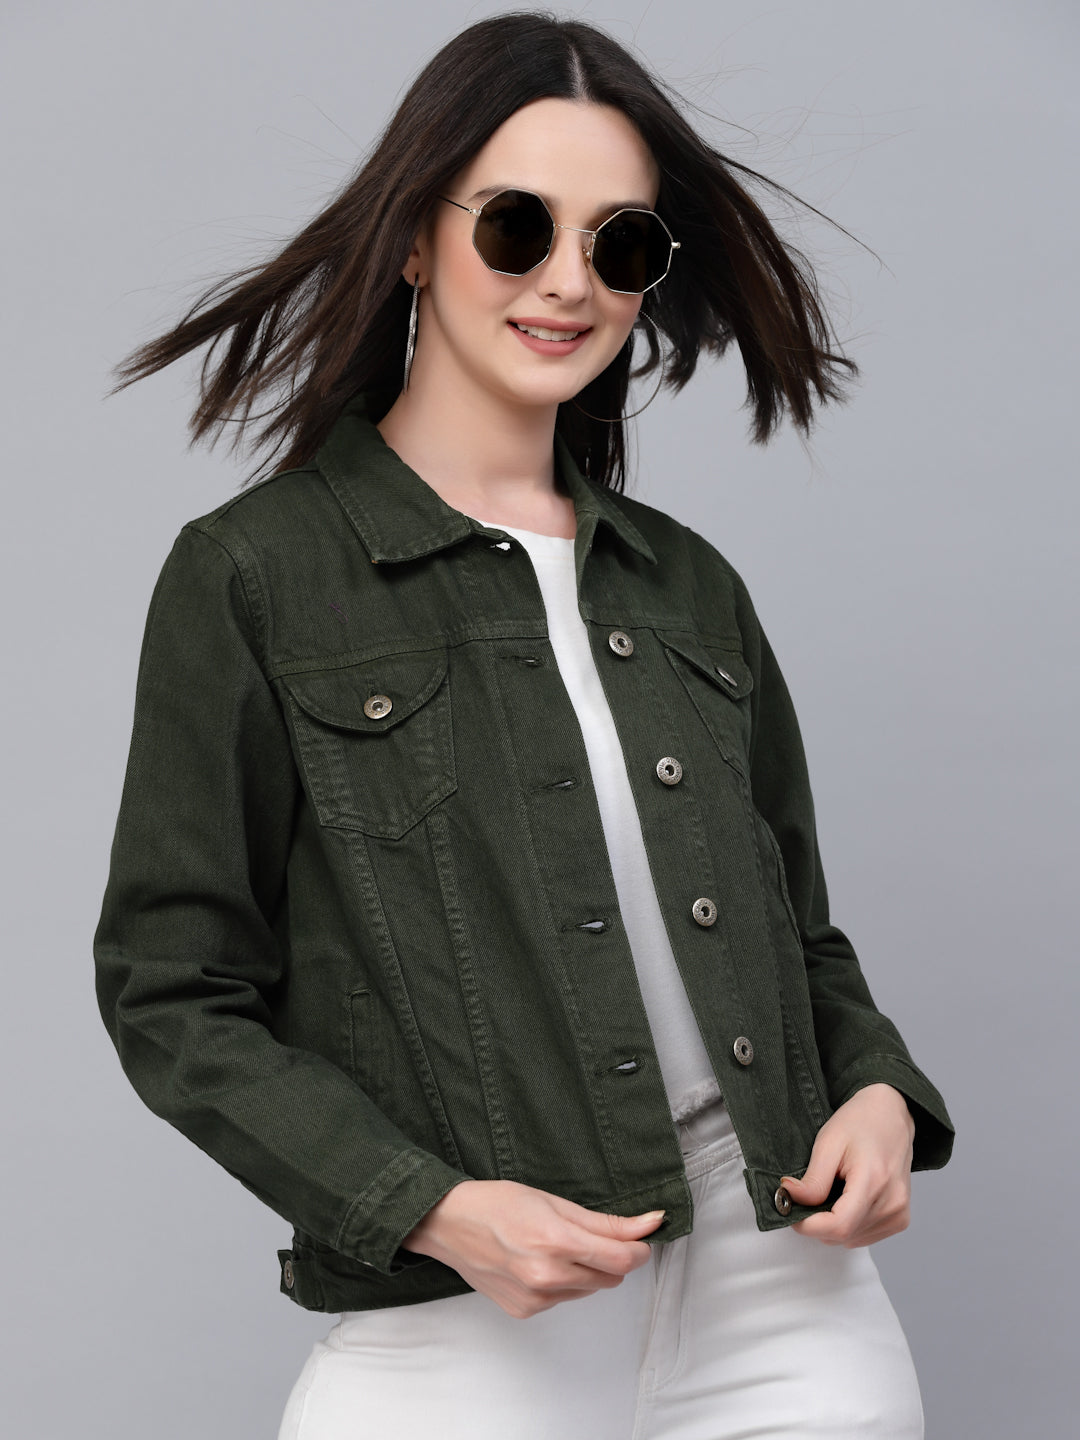 Latest 35 Designs of Denim Jackets for Women (2022) - Tips and Beauty |  Coloured denim jacket, Embroidered denim jacket, Embellished jacket